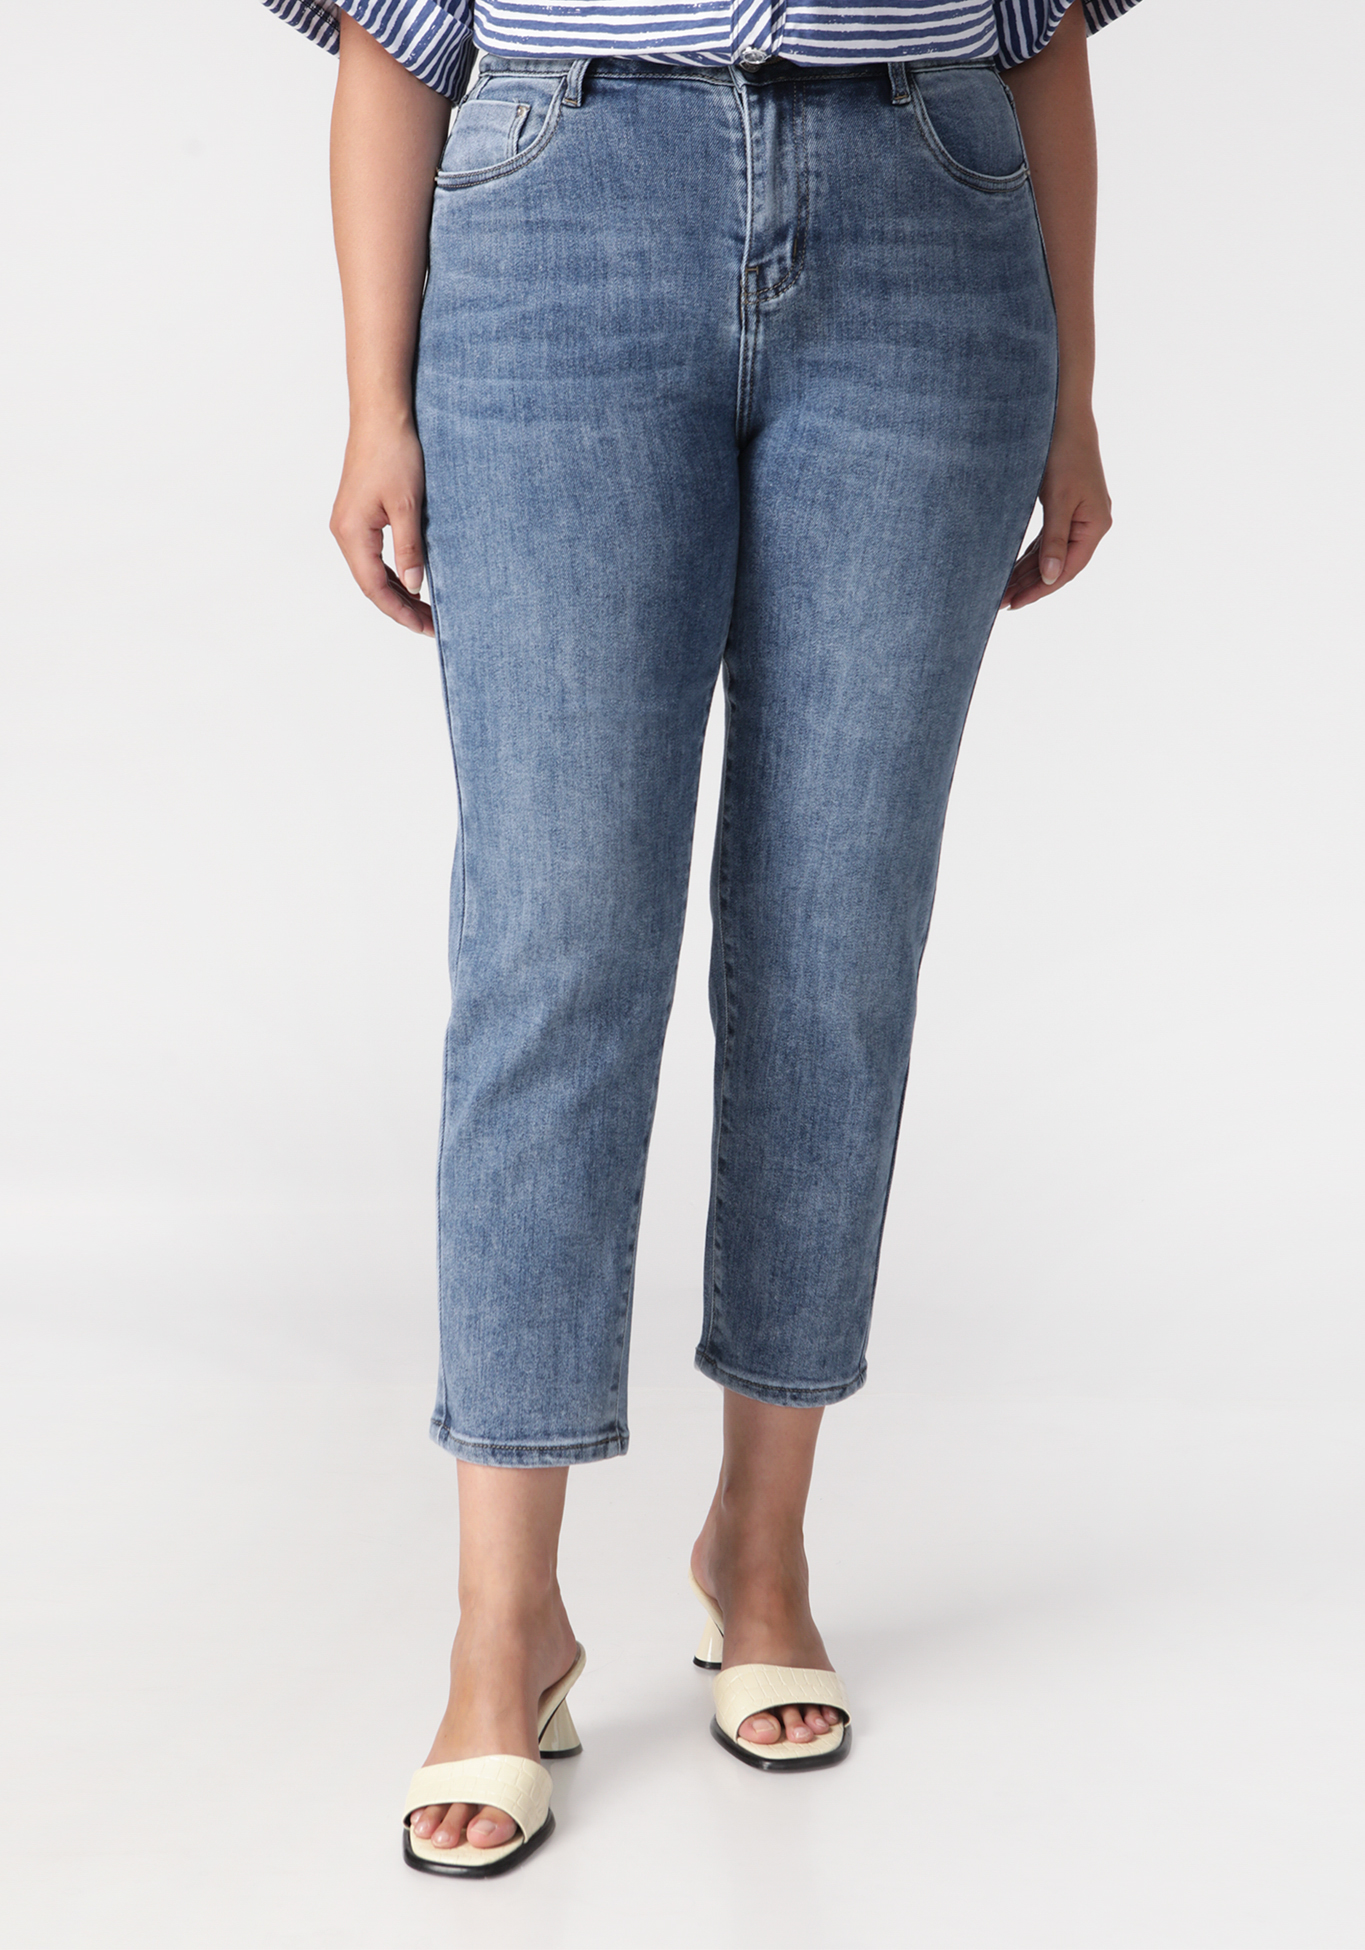 Джинсы «Стильный образ», цвет джинсовый, размер 50